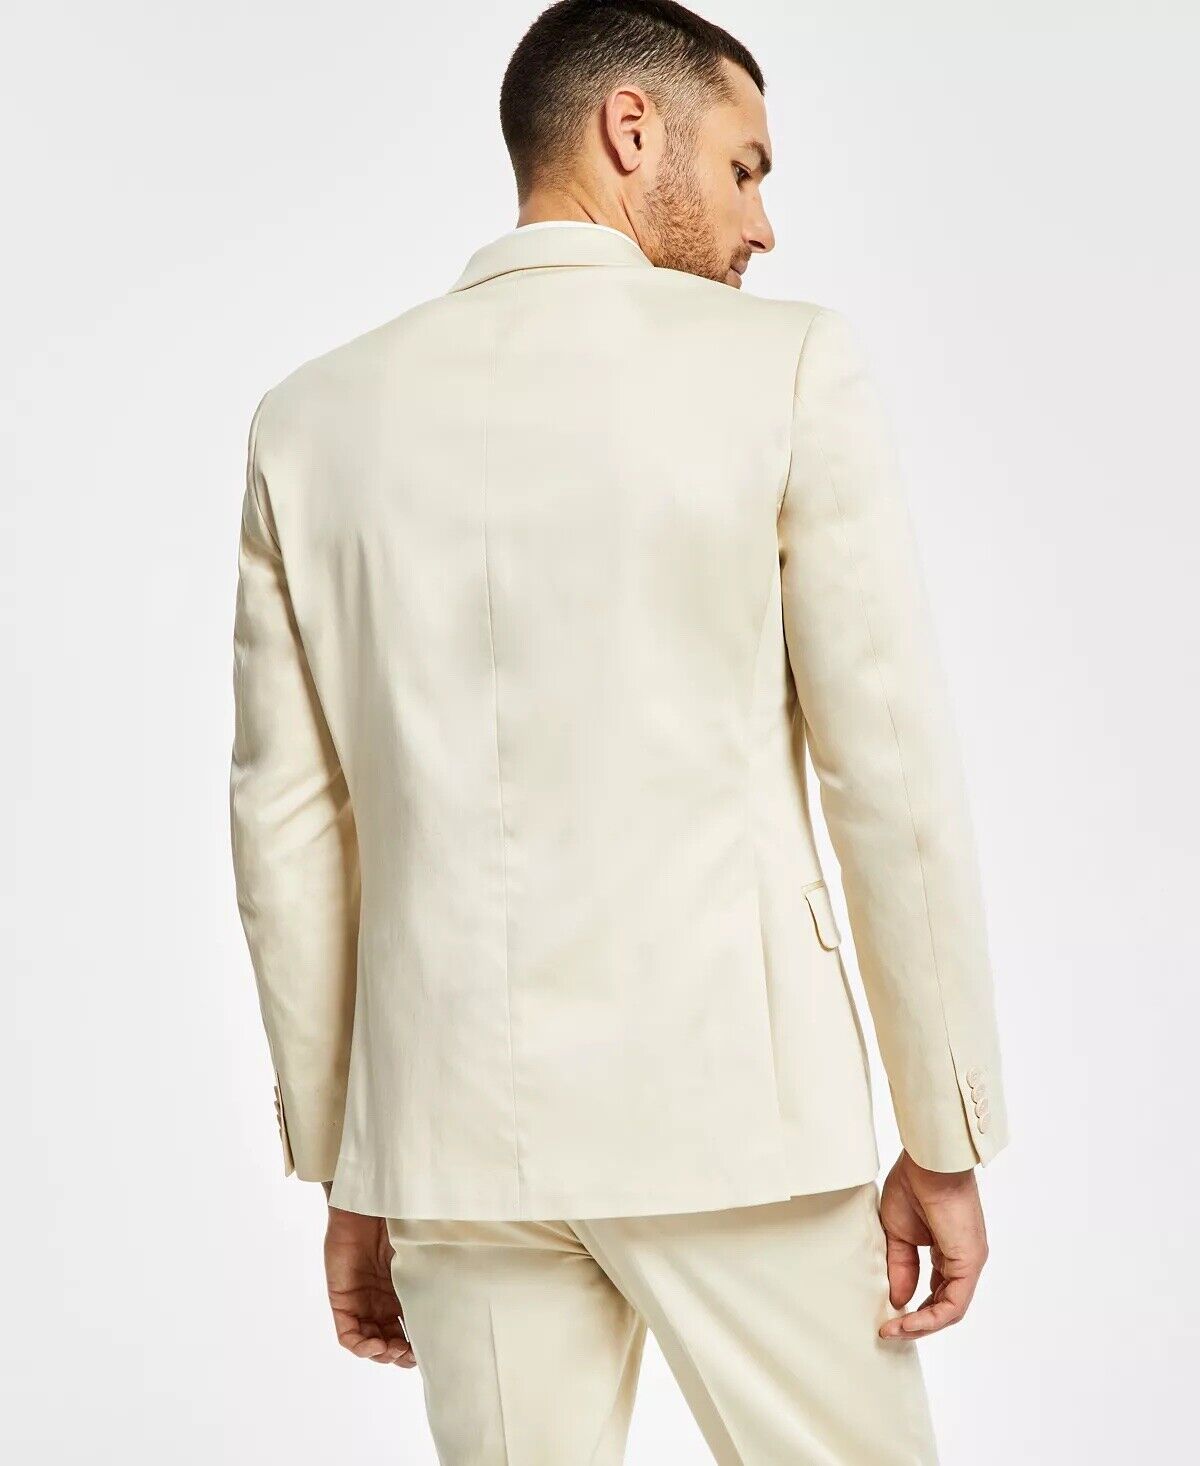 Alfani Men's Suit Jacket Cream 38L Slim-Fit Solid Cream Cotton